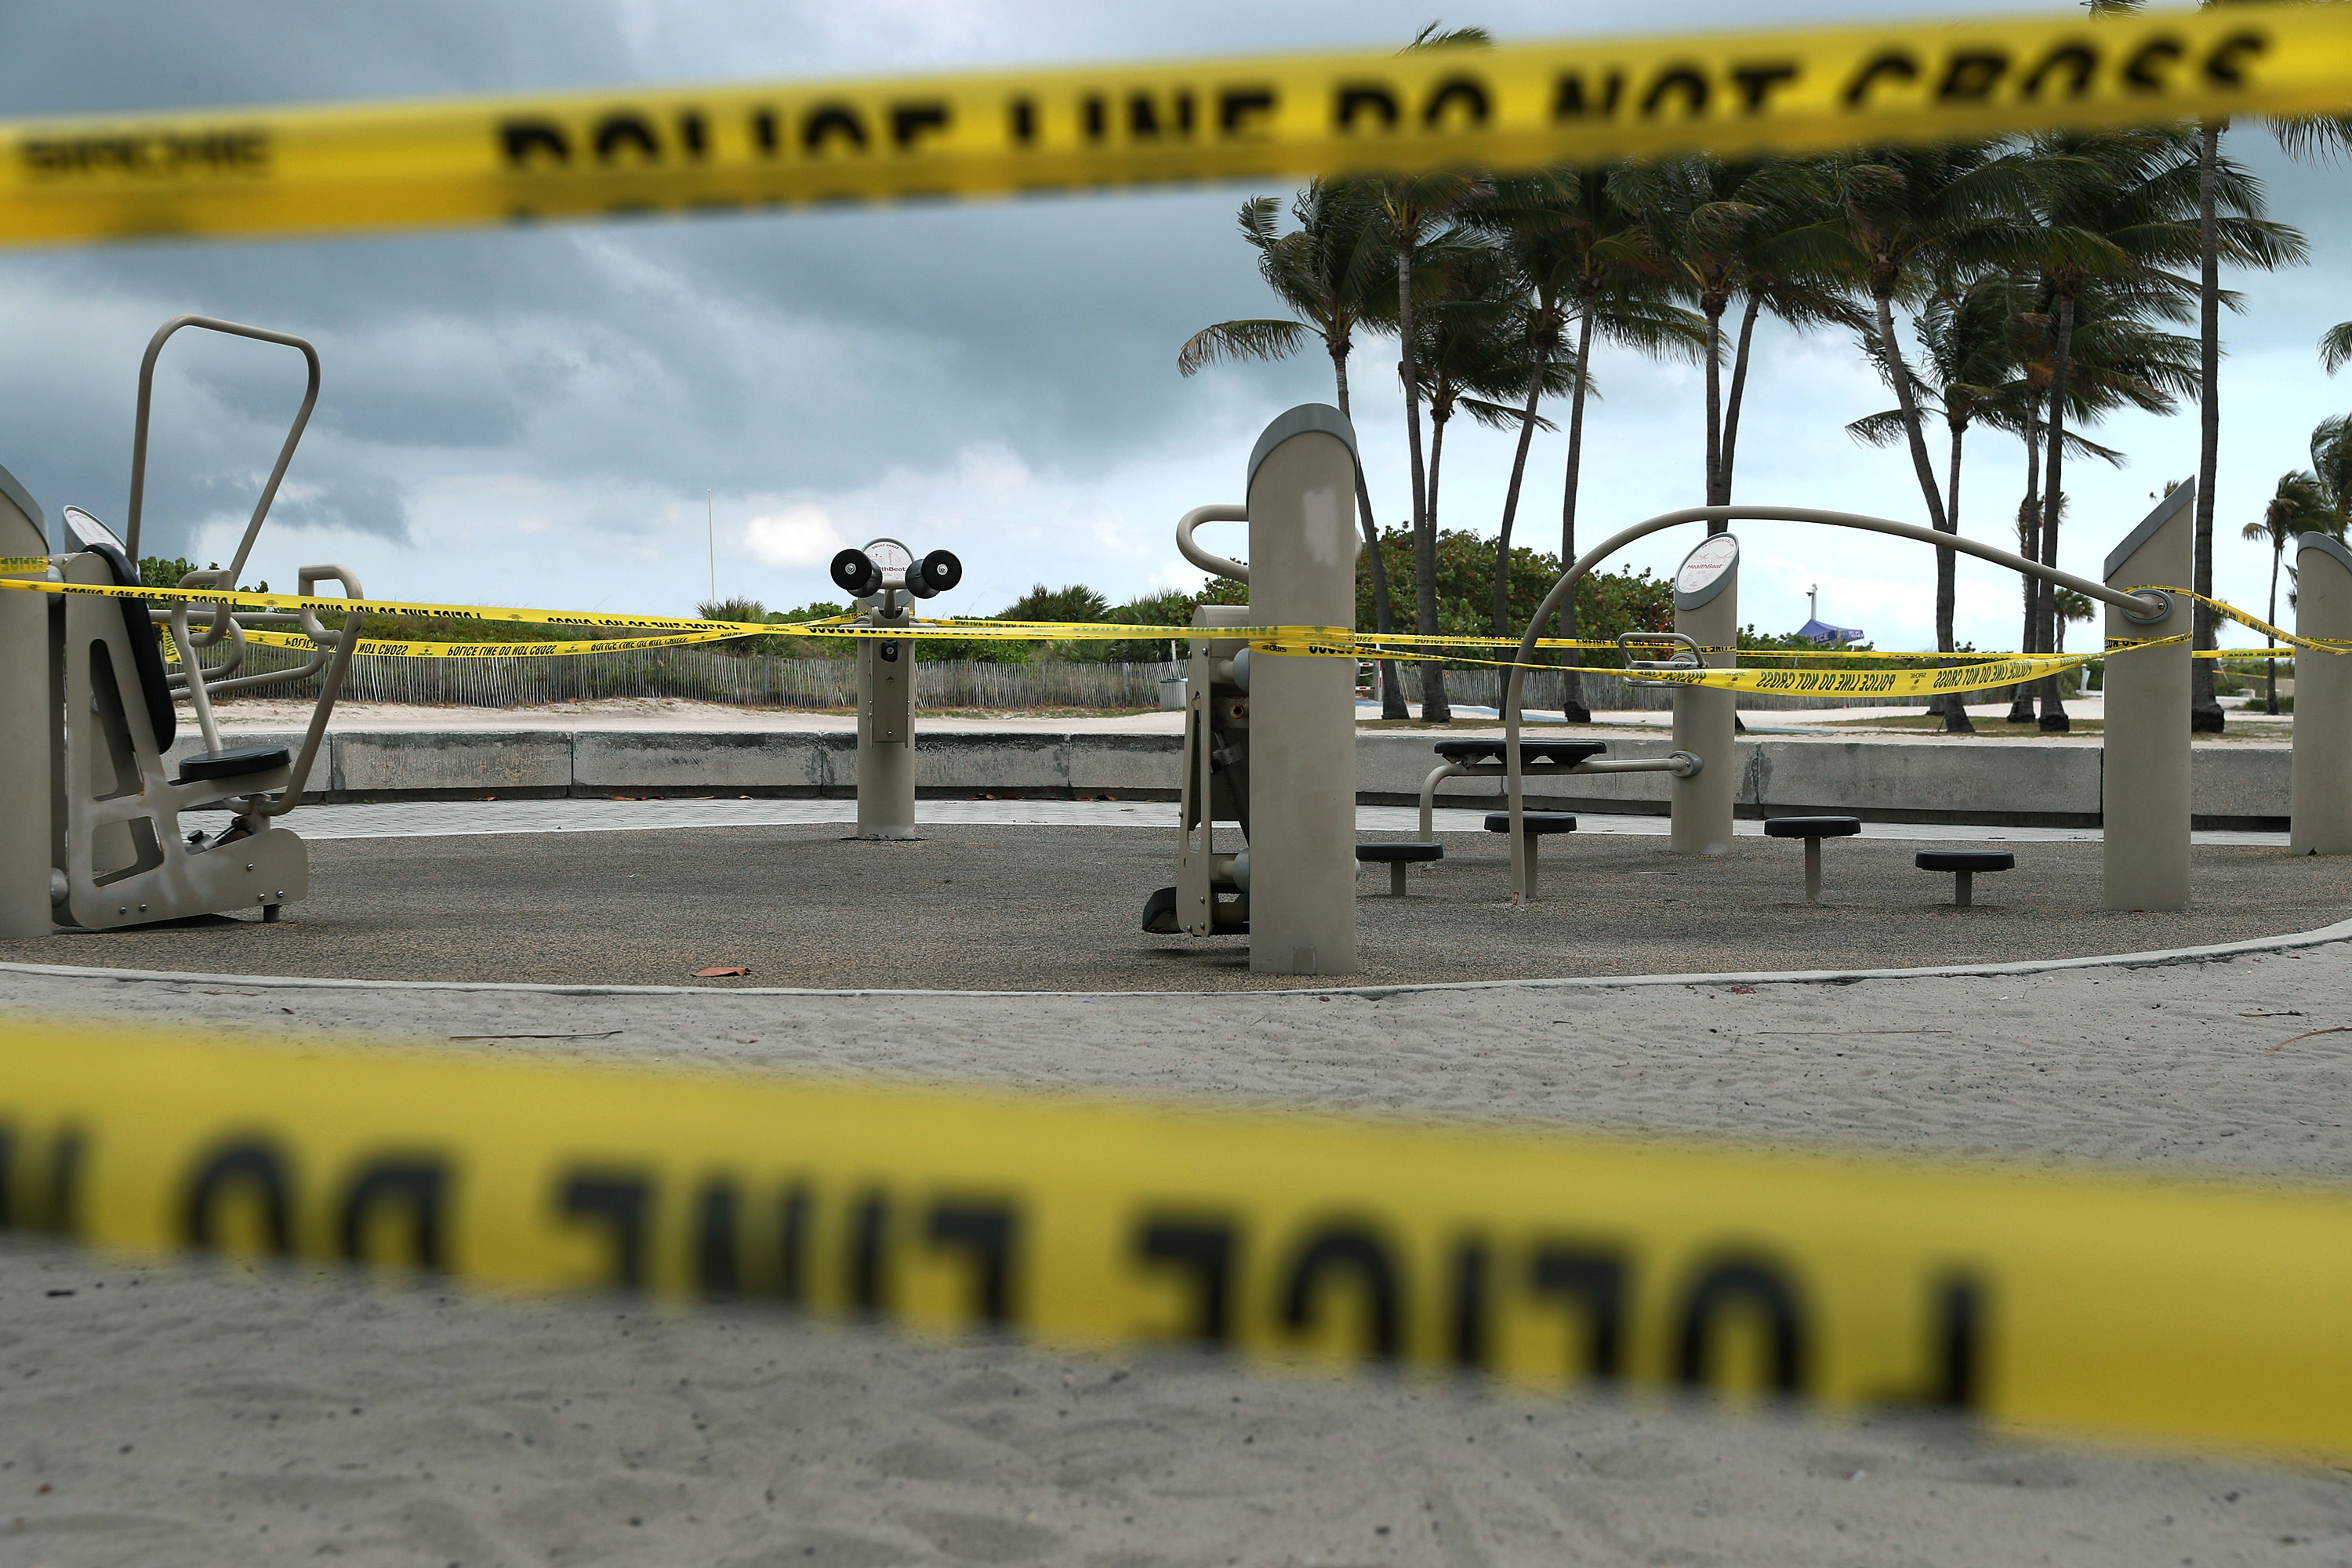 Des restes humains apparents s’échouent soudainement sur une plage de Floride